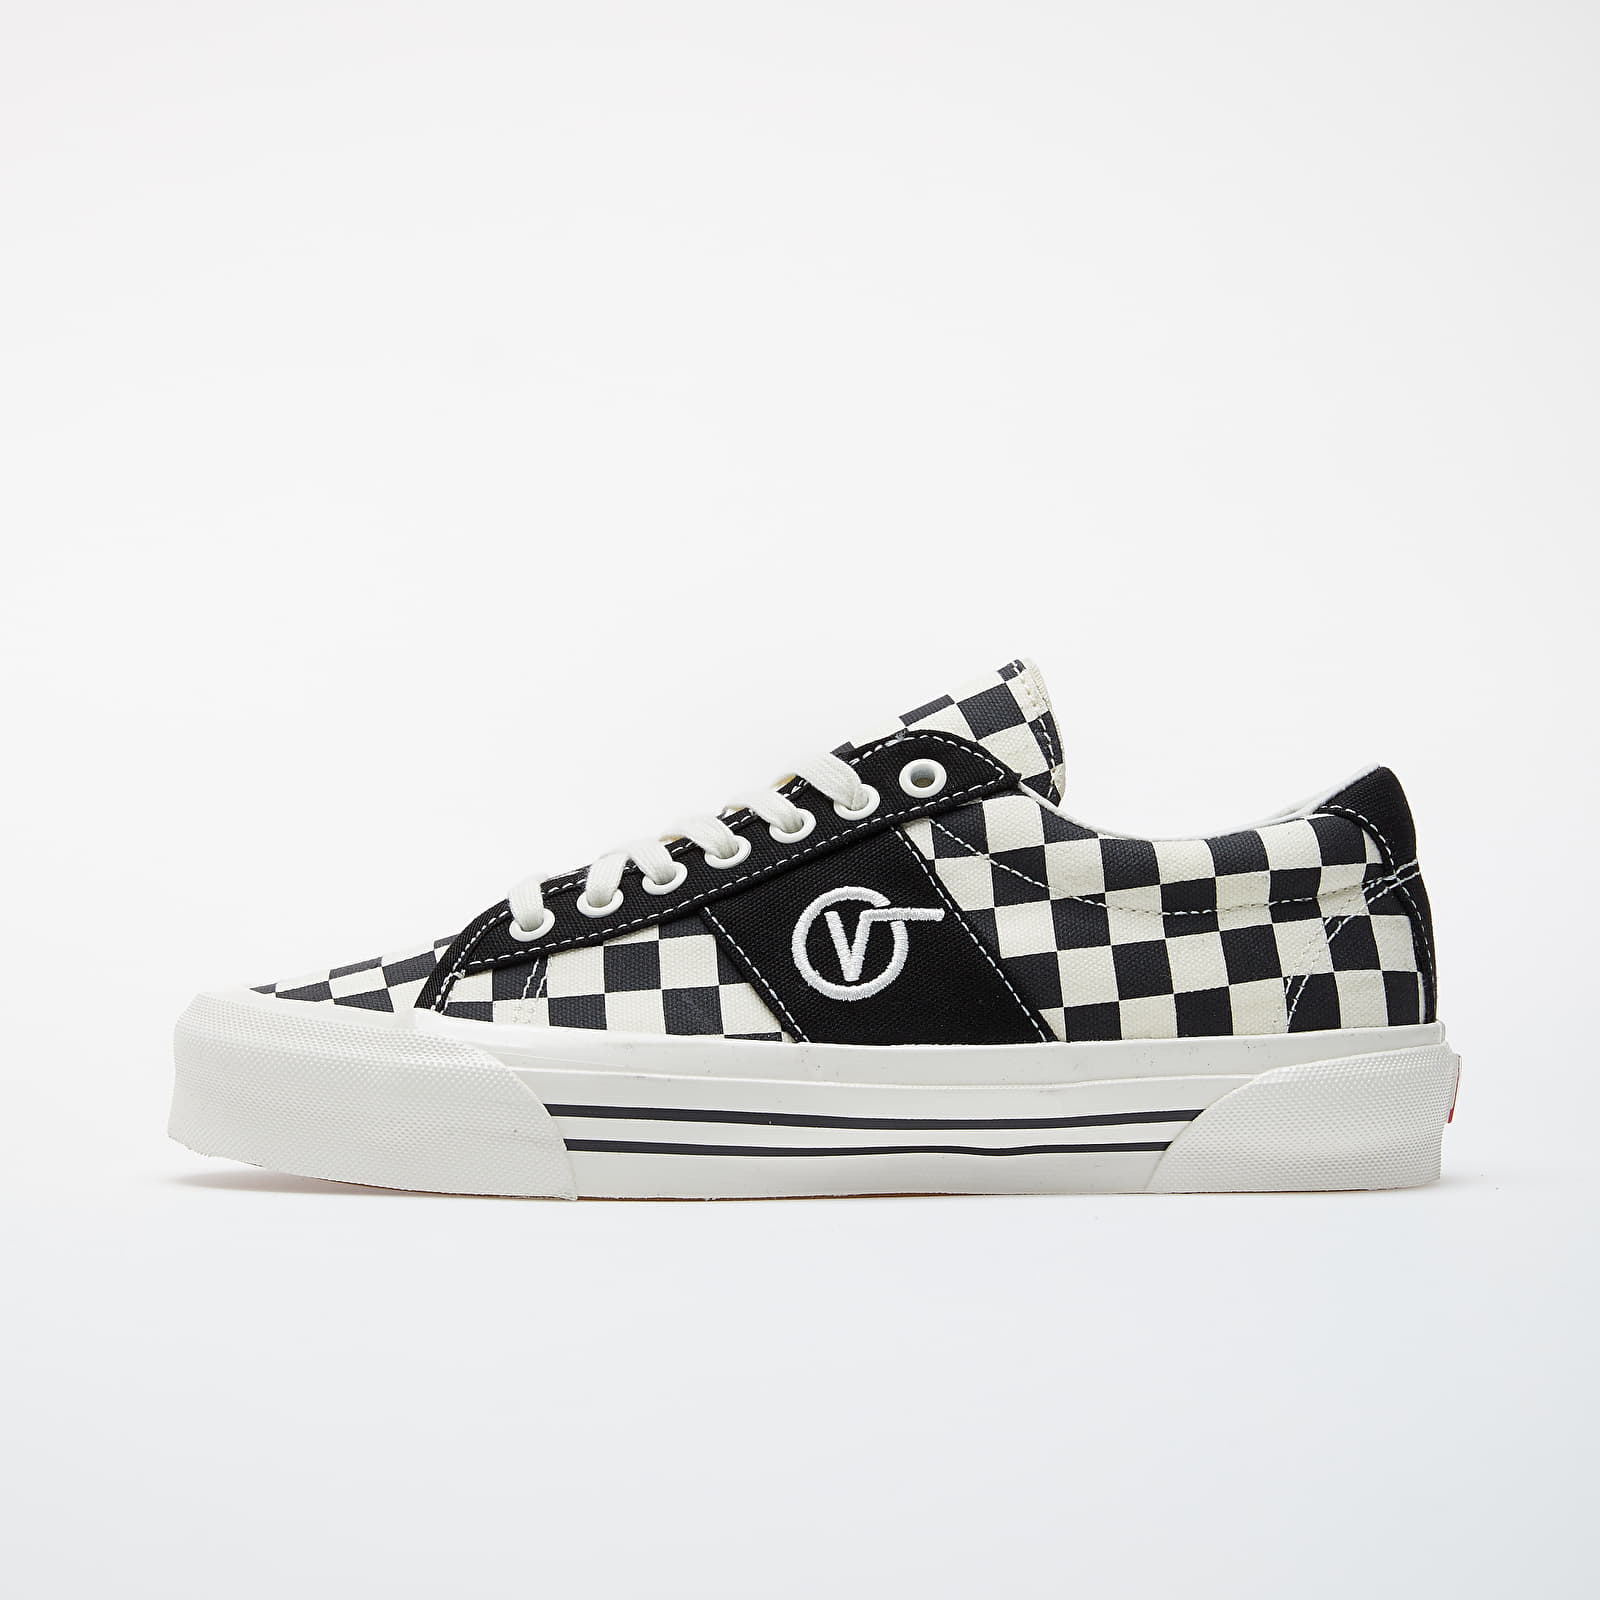 Încălțăminte și sneakerși pentru bărbați Vans OG Sid LX (Canvas/ Checkerboard) Black/ White